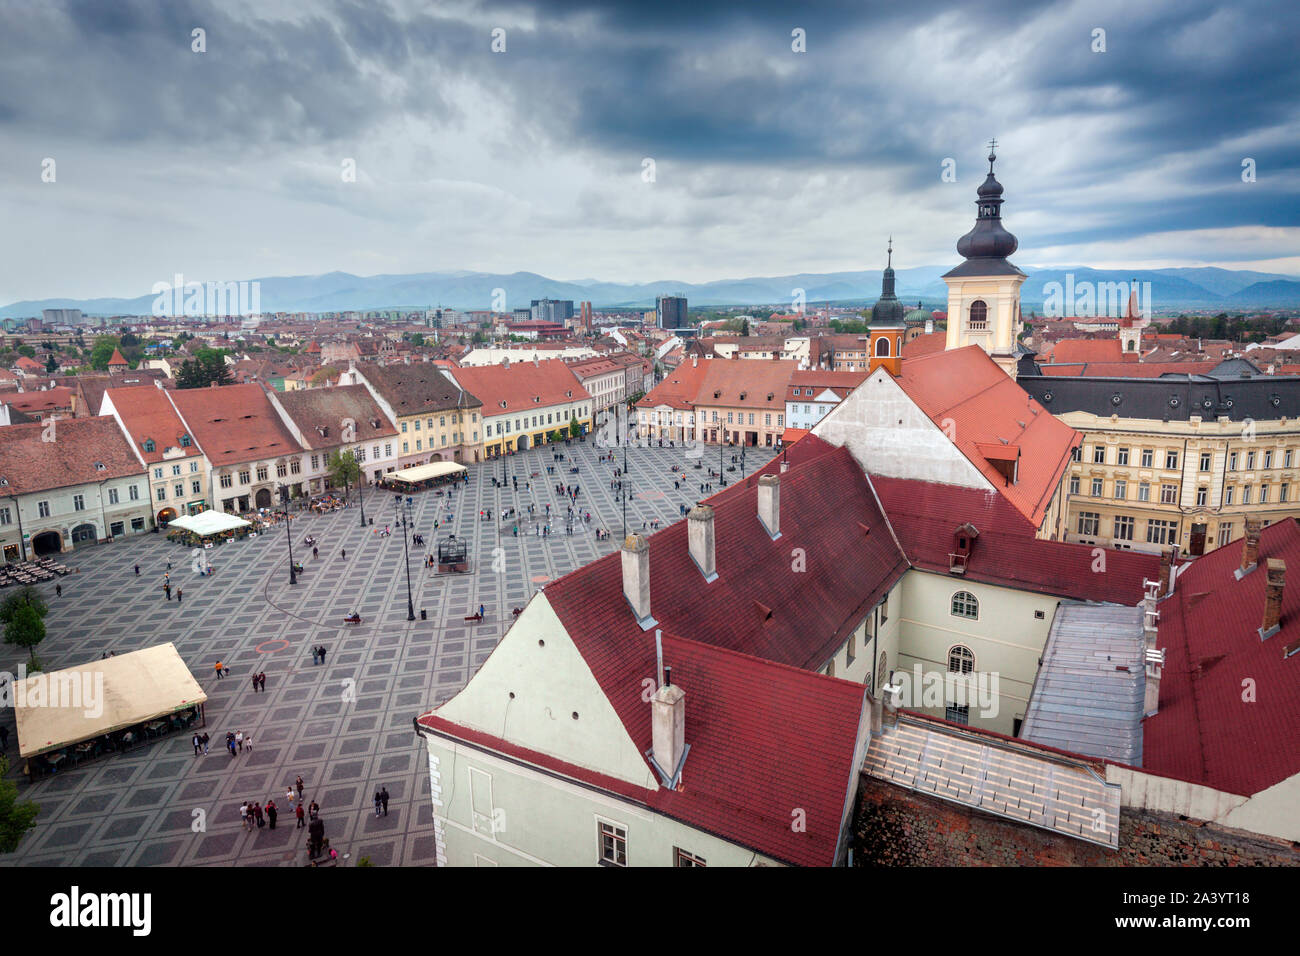 Grand Square in Sibiu, Romania Stock Photo